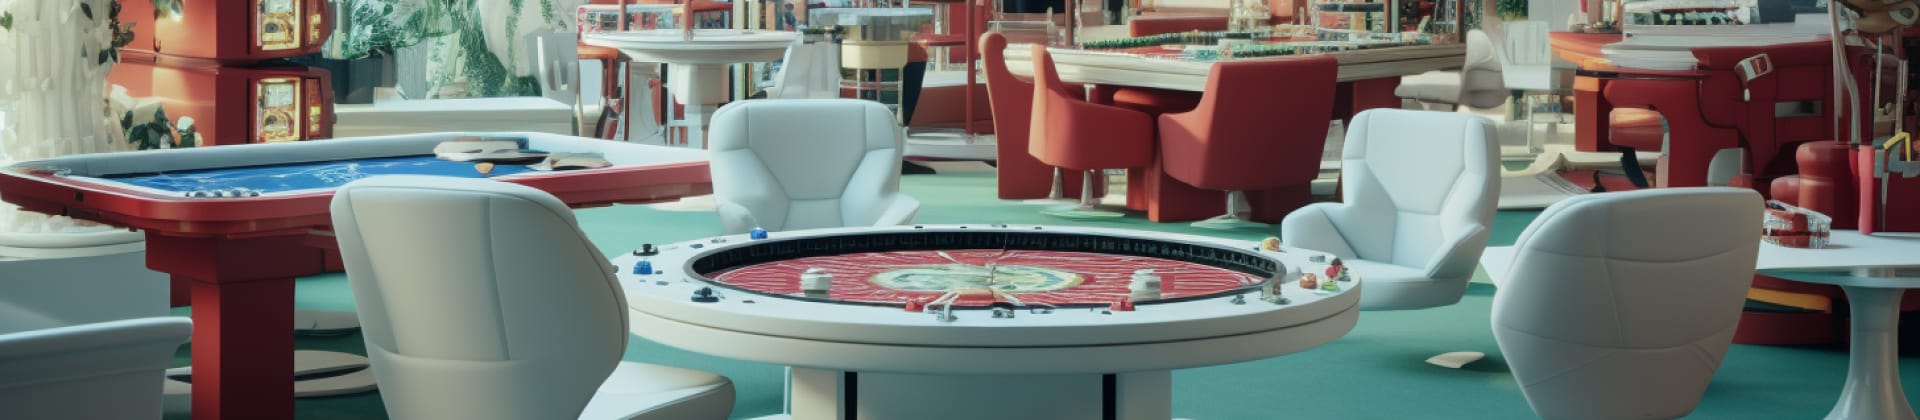 Maximera wint met hoge bonussen voor casino's met svenskt-licenties